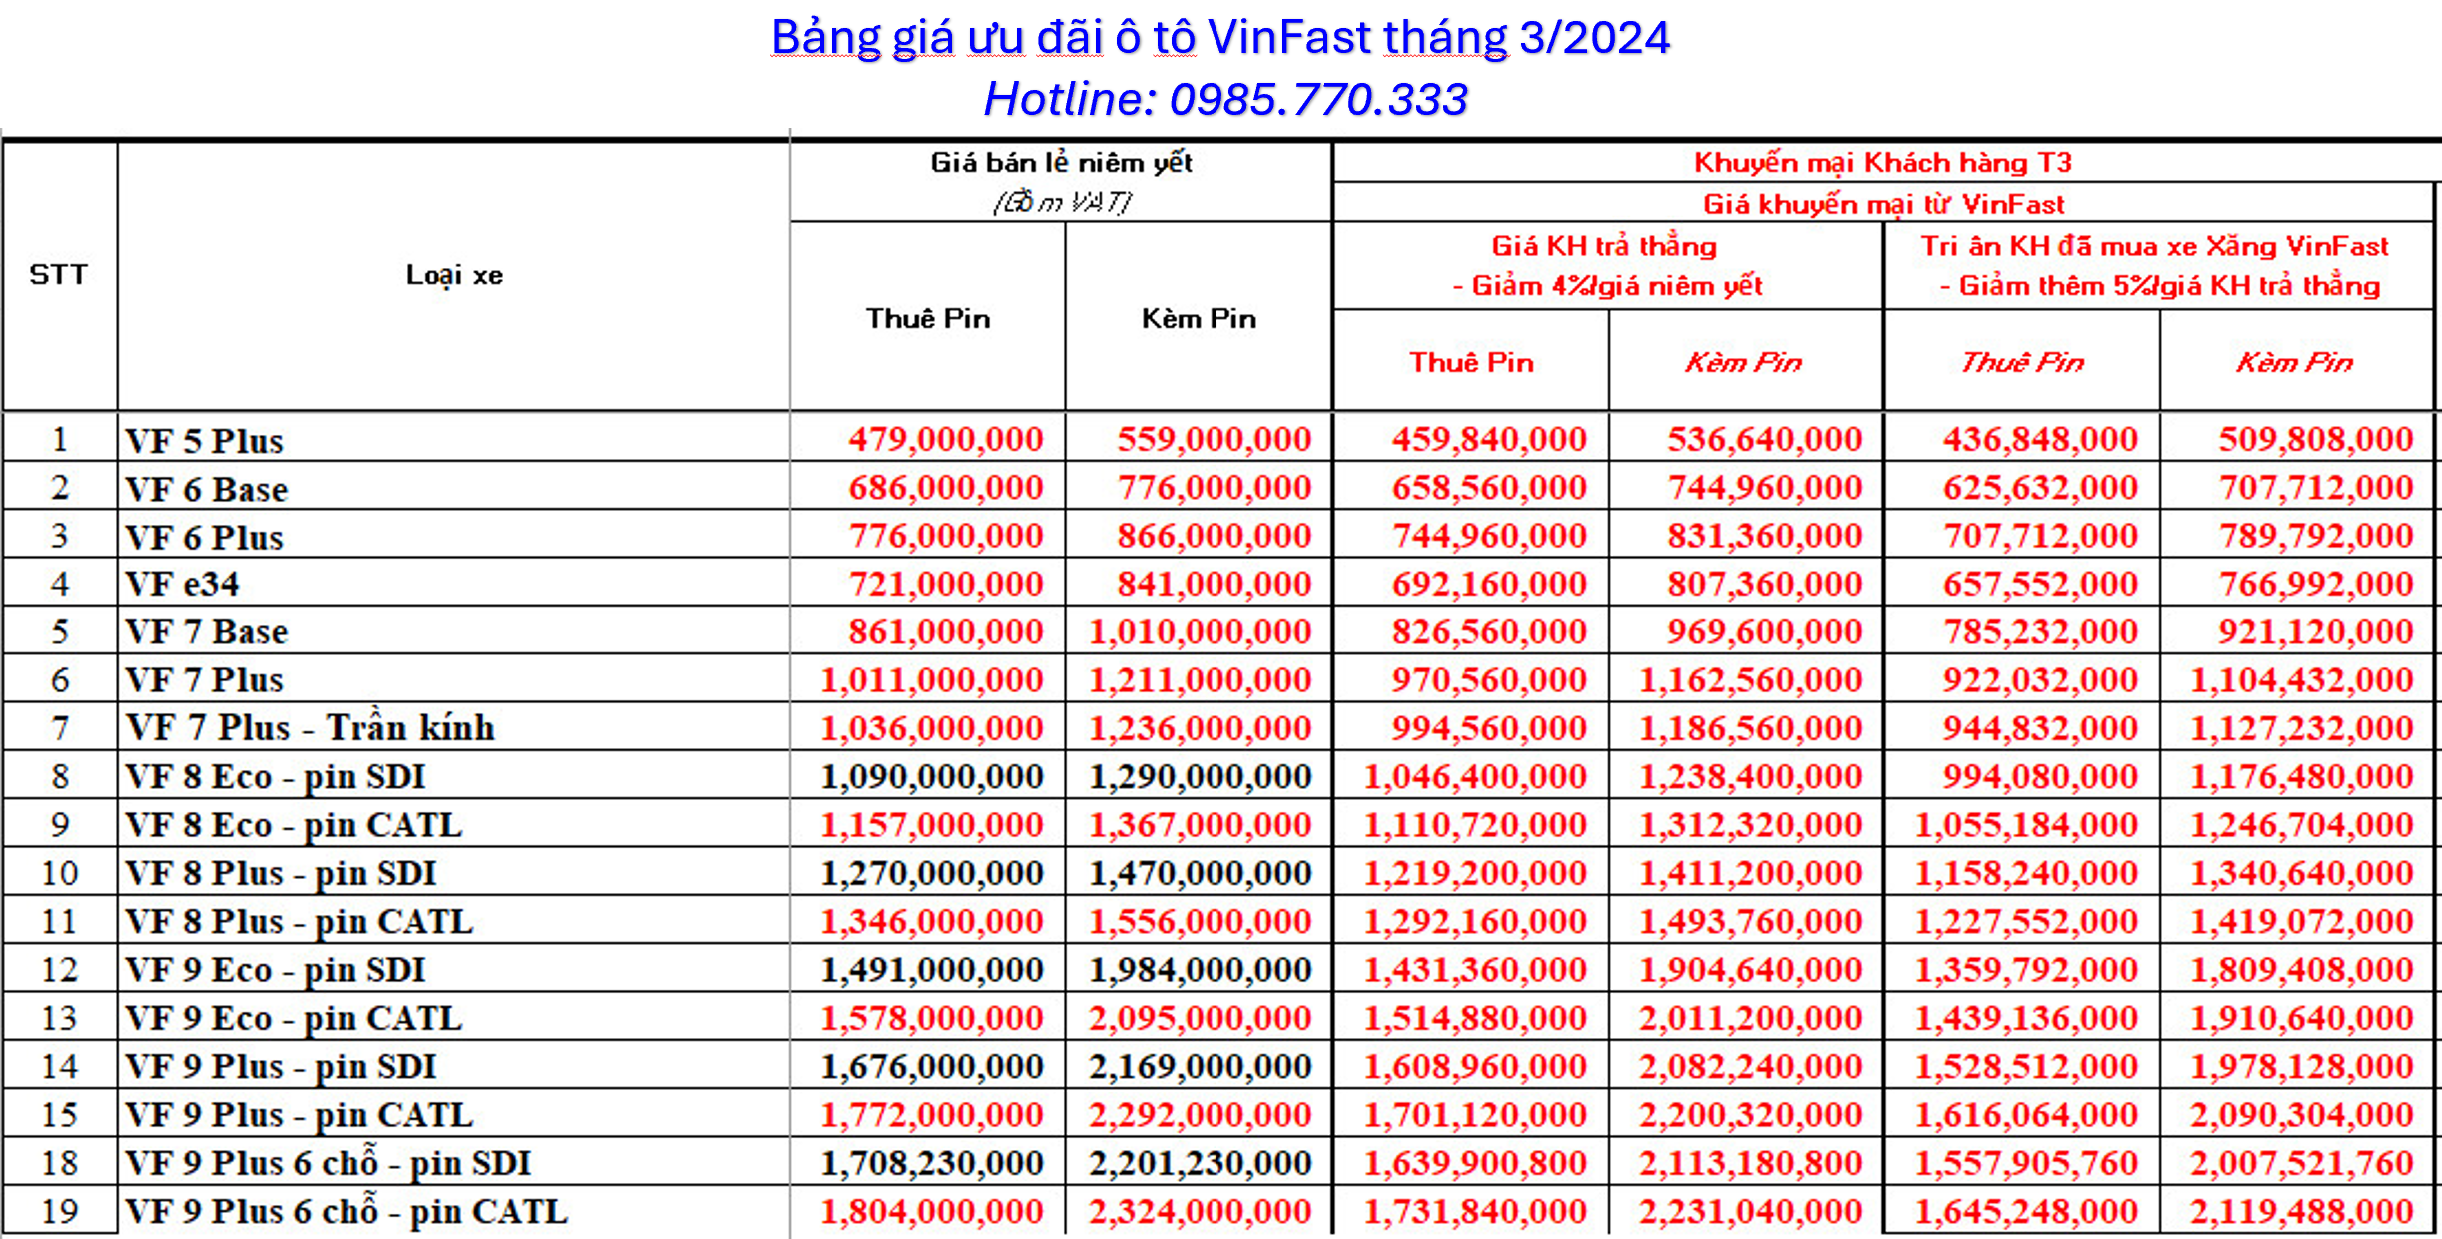 Bang gia uu dai o to dien VinFast thang 3 2024 a - Bảng giá ô tô điện VinFast tháng 03/2024